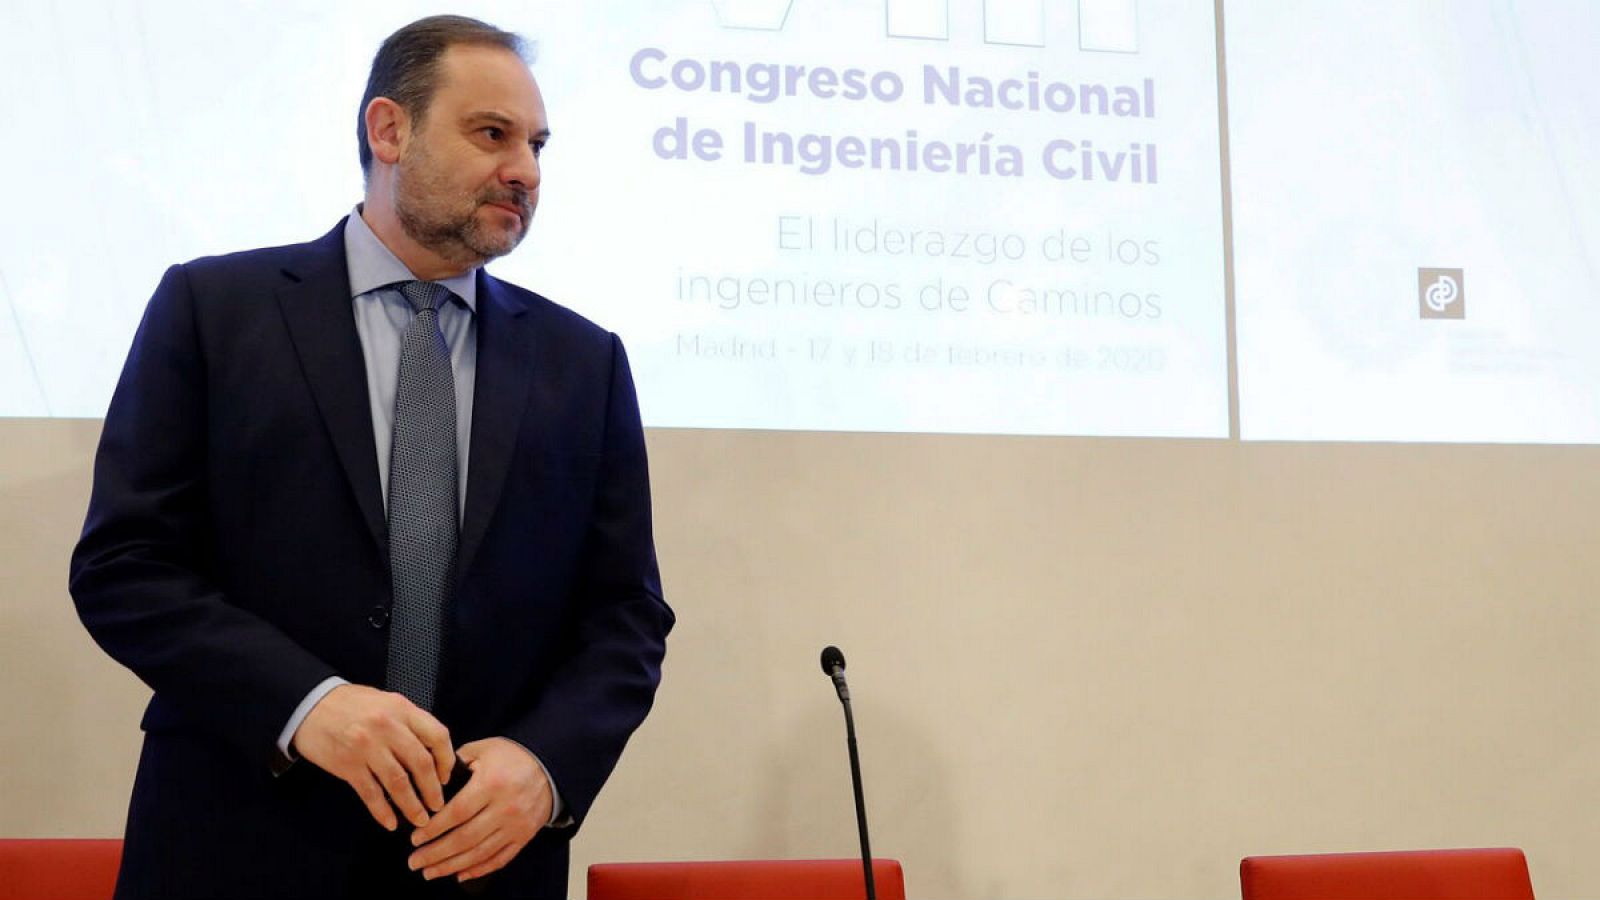 El ministro de Transportes, Movilidad y Agenda Urbana, José Luis Ábalos, inaugura el VIII Congreso Nacional de Ingeniería Civil, organizado por el Colegio de Ingenieros de Caminos, Canales y Puertos en Madrid.